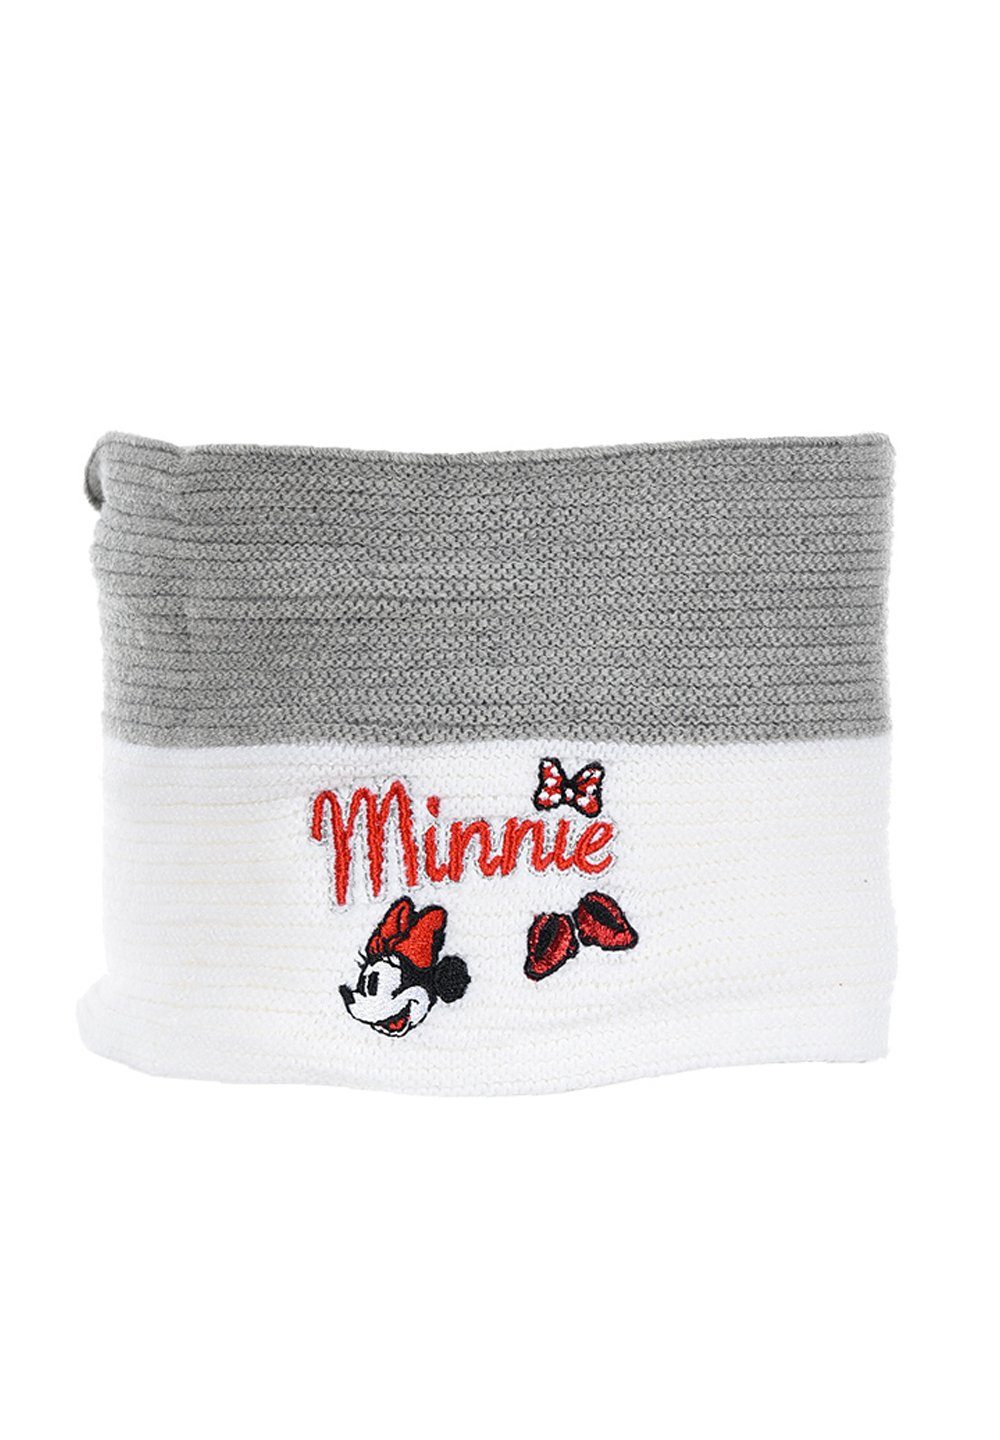 Disney Minnie Mouse Loop Kinder Mädchen Winter-Schal Strick-Schlauch-Schal Mini Maus Grau